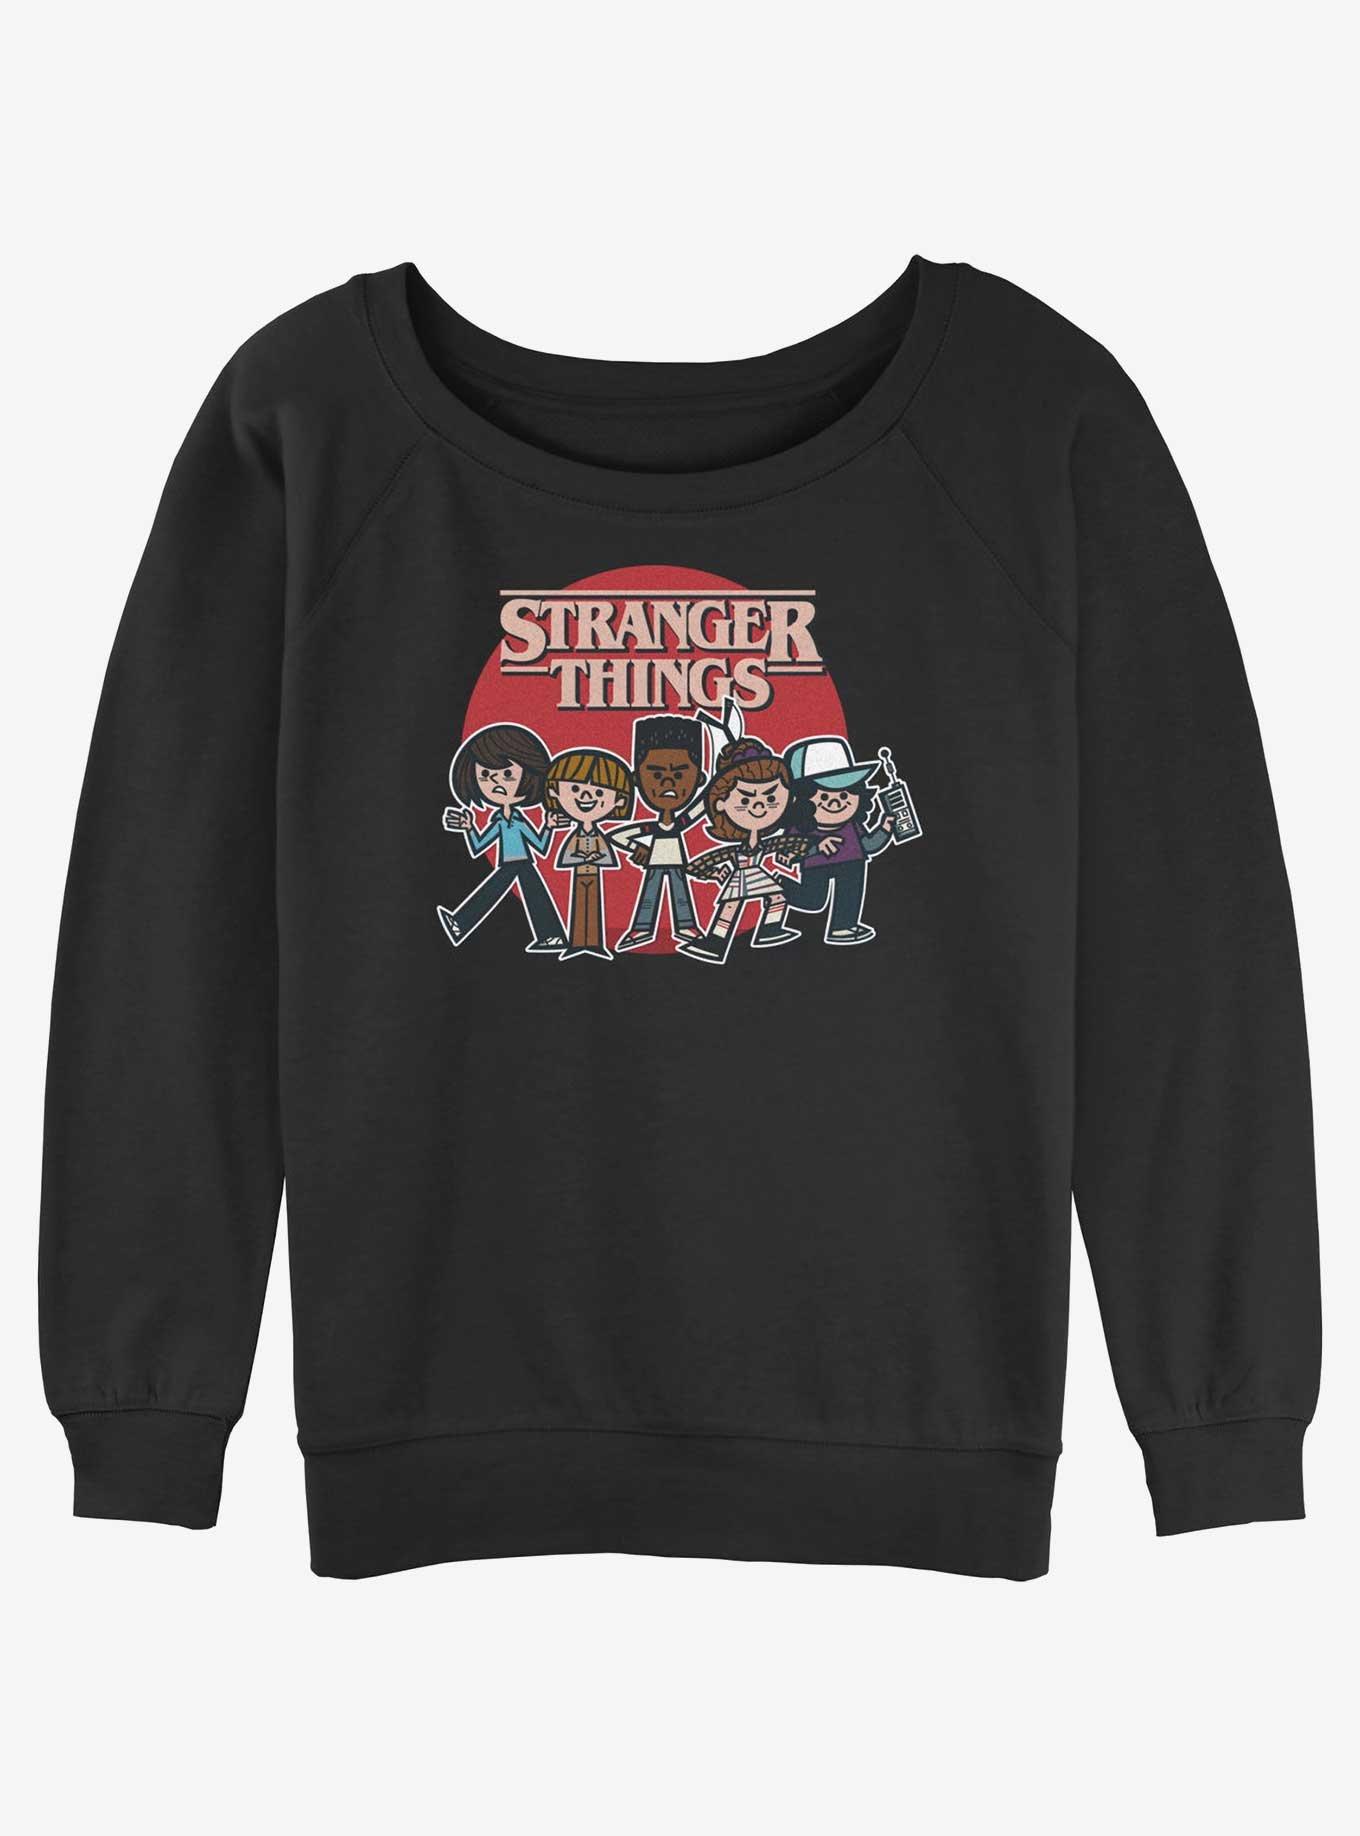 Stranger Things Toon Gang Womens Slouchy Sweatshirt, BLACK, hi-res